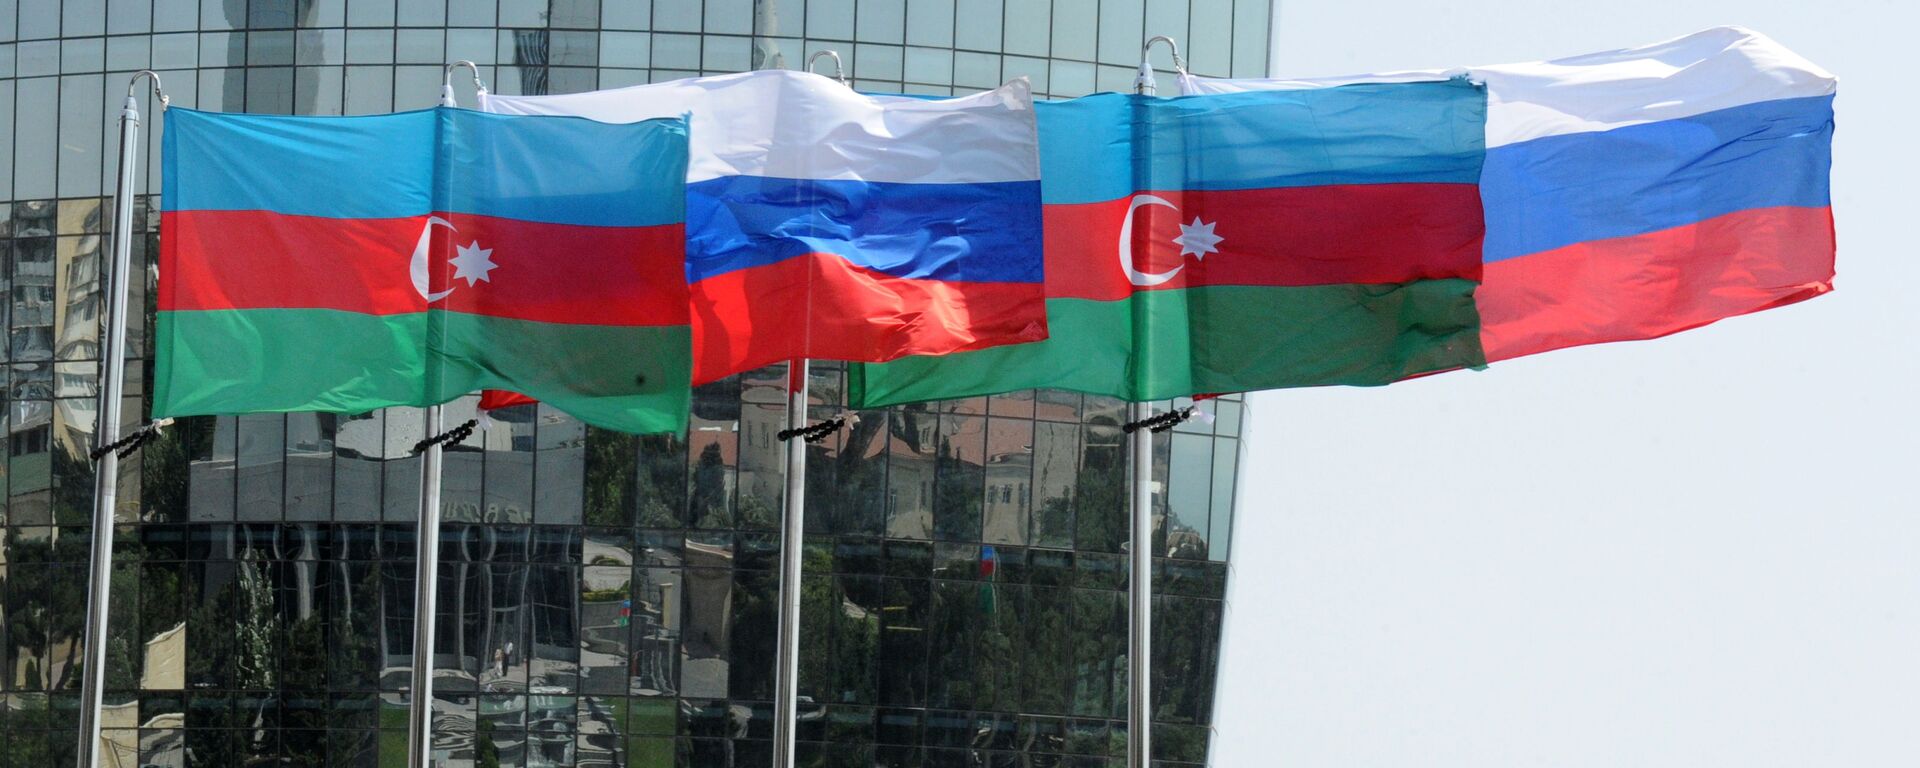 Национальные флаги России и Азербайджана на фоне фасада одной из башен Башни Пламени (Flame Towers) в Баку - Sputnik Азербайджан, 1920, 26.01.2022